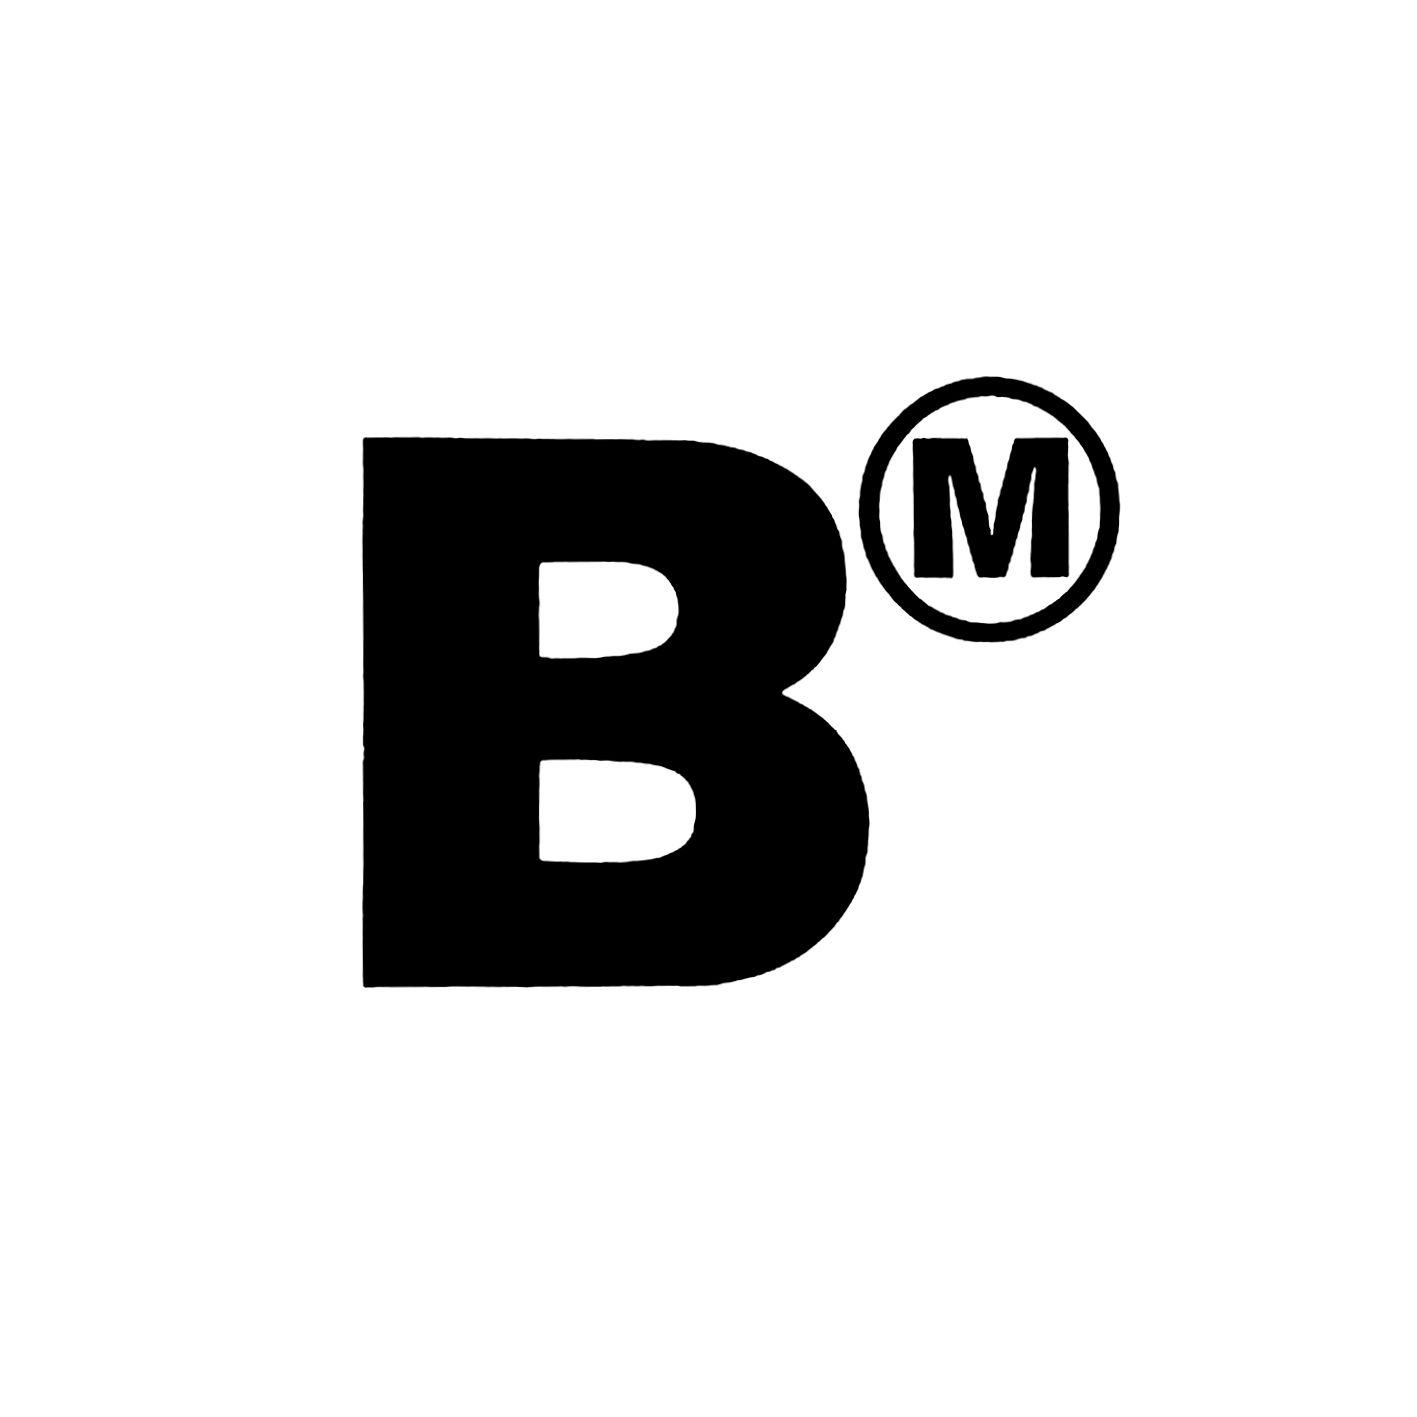 BM Logo - BM Contemporary Art Center Logo - Graphis